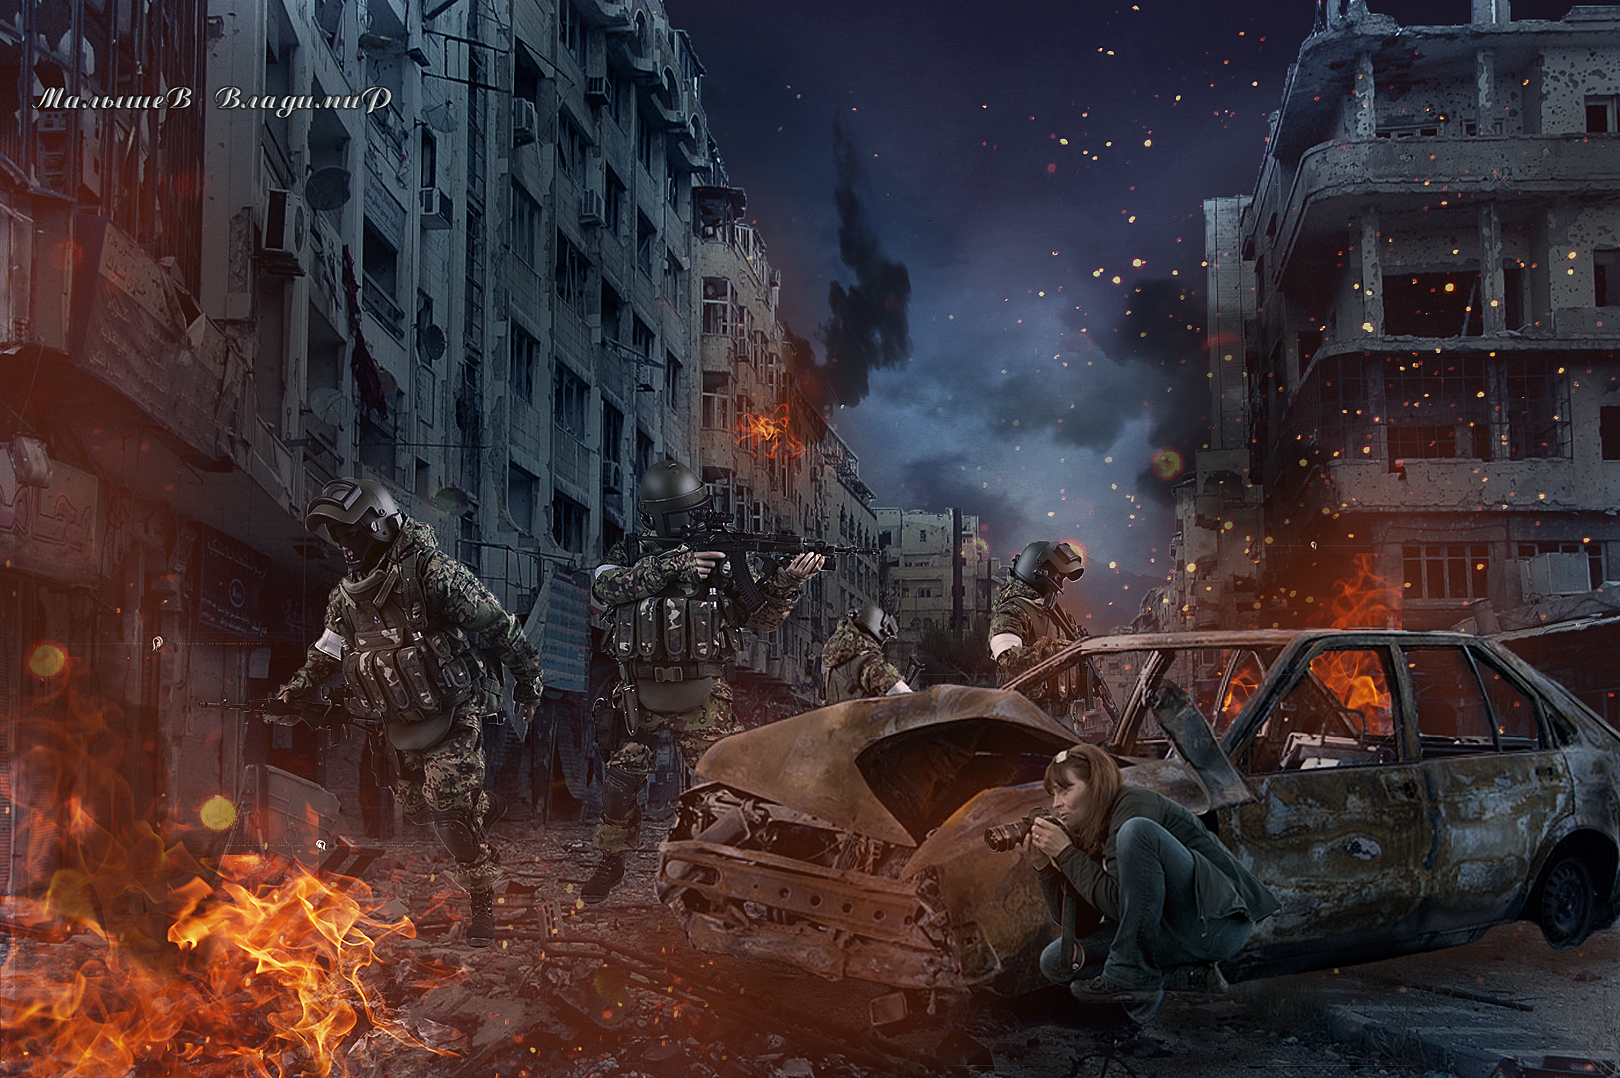 Фото В ночном городе девушка фотографирует военные действия, спрятавшись за разбитую машину, фотограф Владимир Малышев